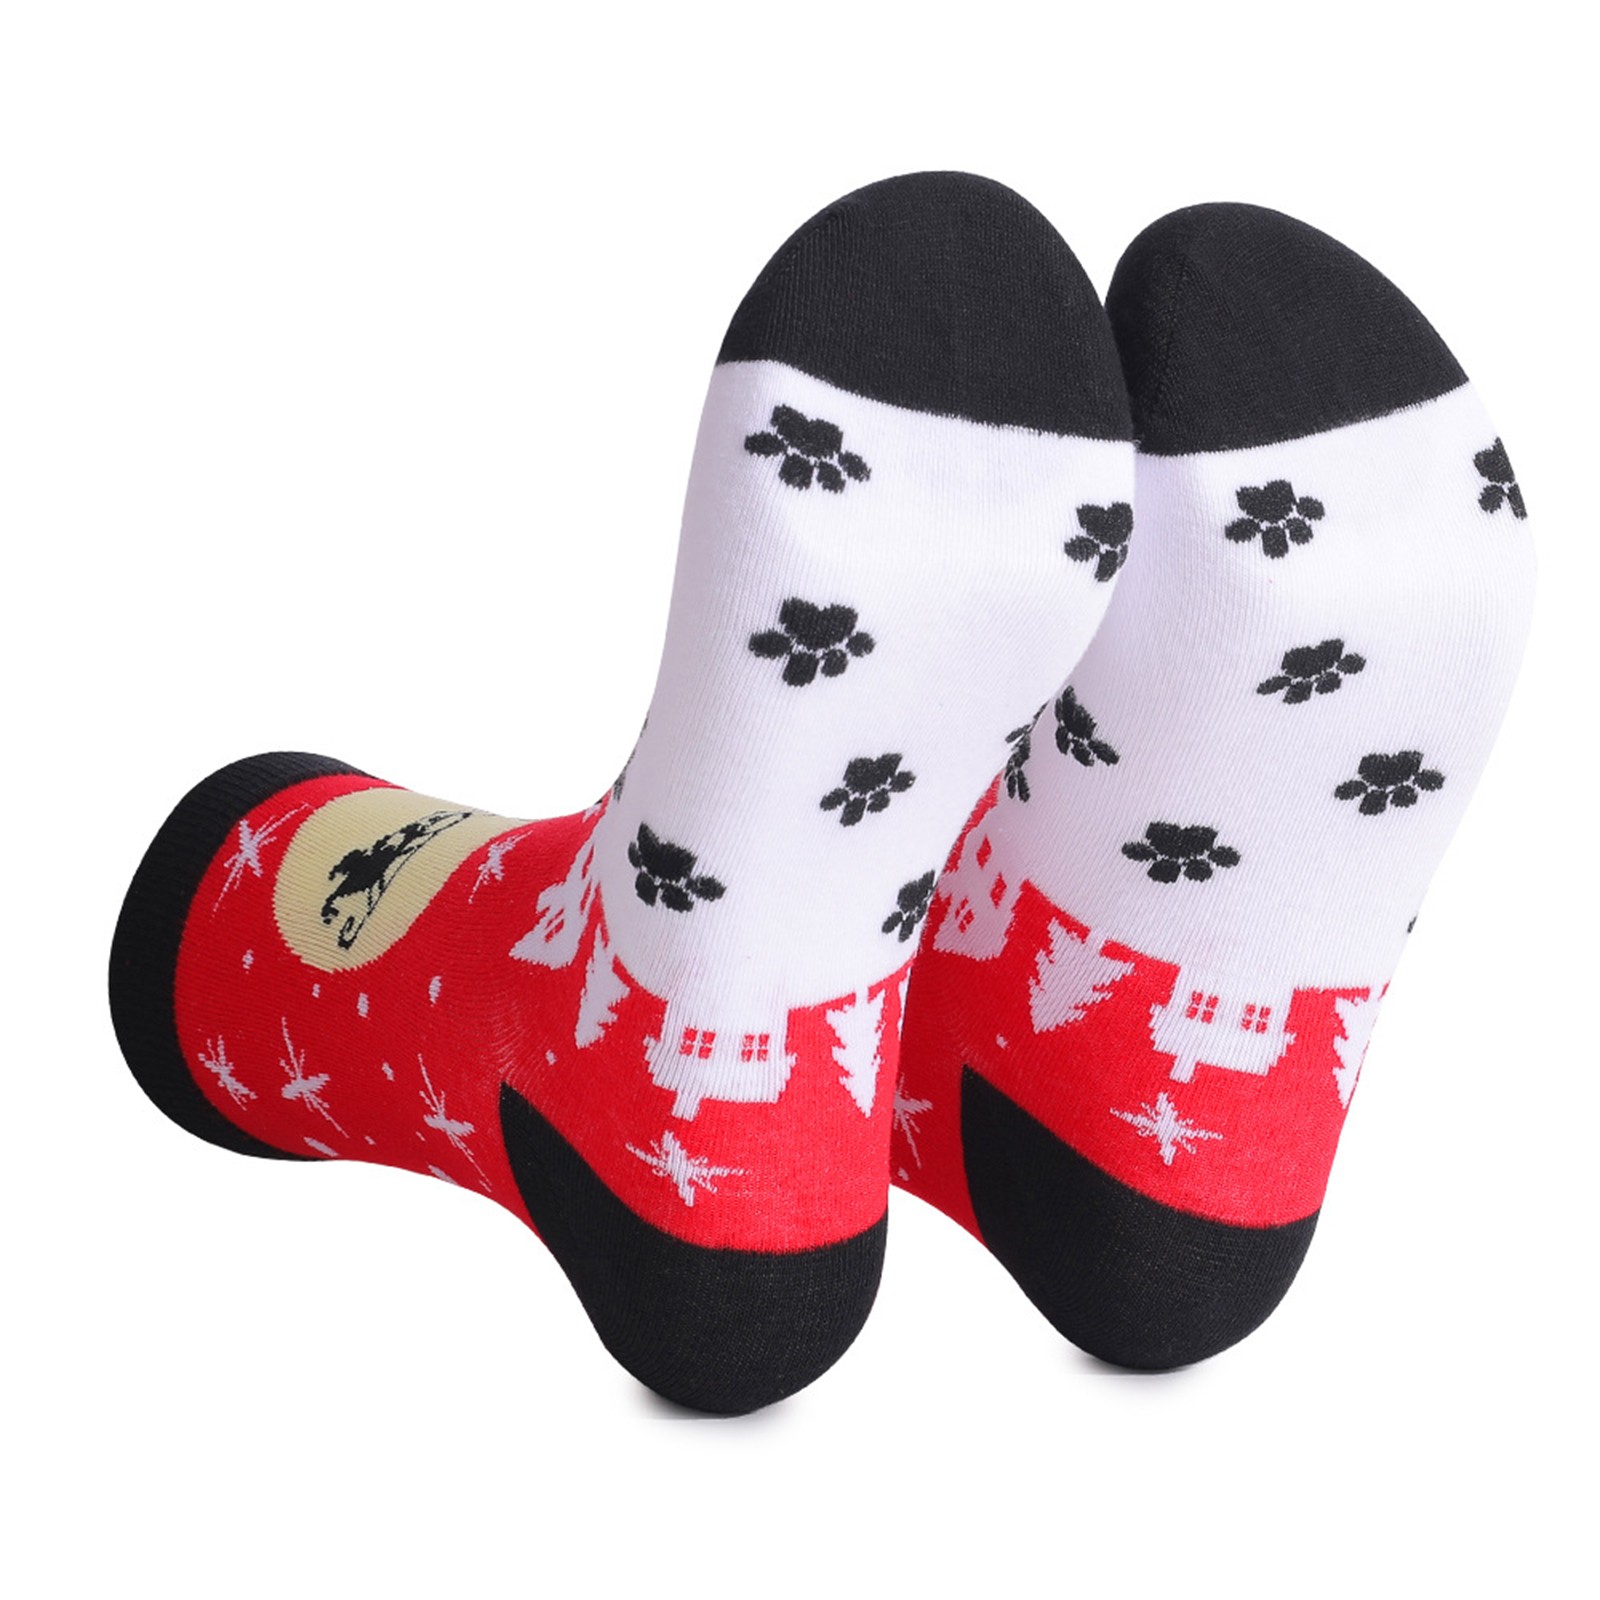 Ogiraw Socks Warm Socks for Women Men's and Women's Christmas Printed ...